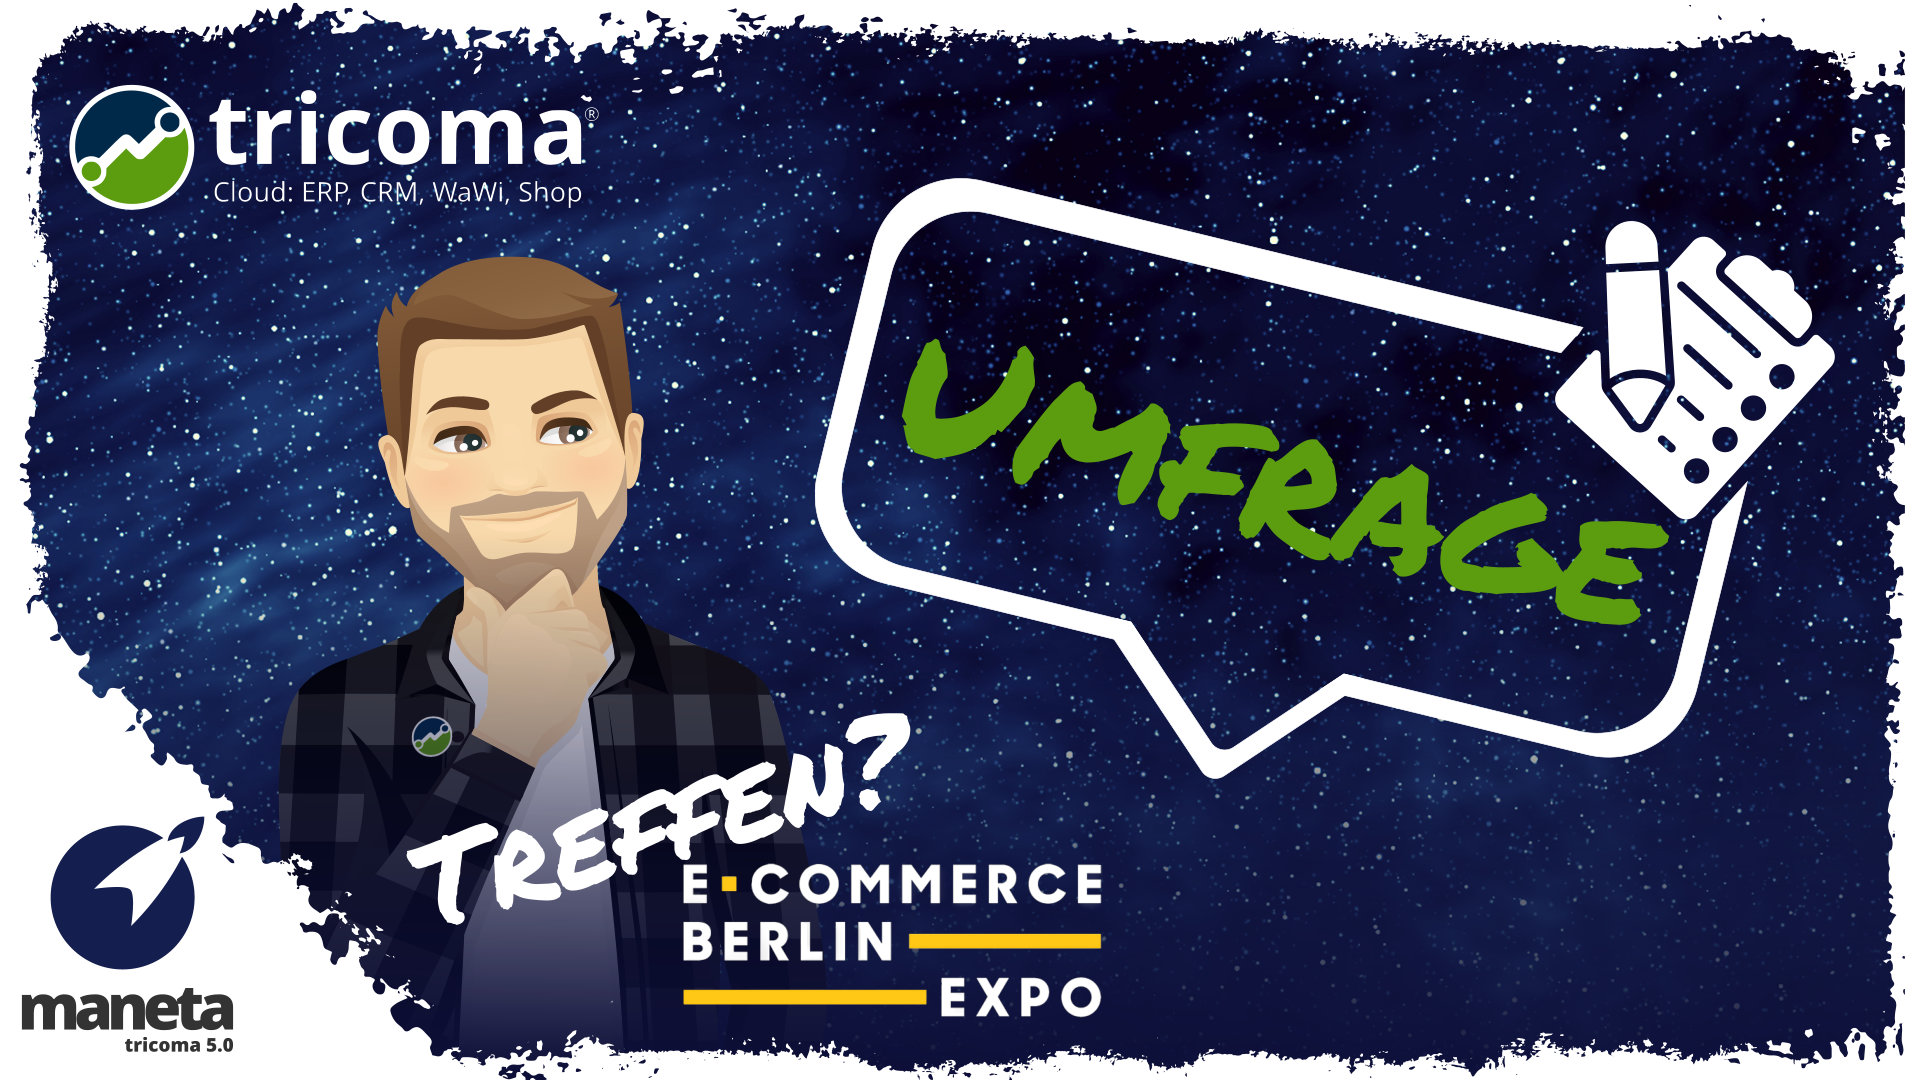 Umfrage: Treffen vor/nach E-Commerce Berlin Expo